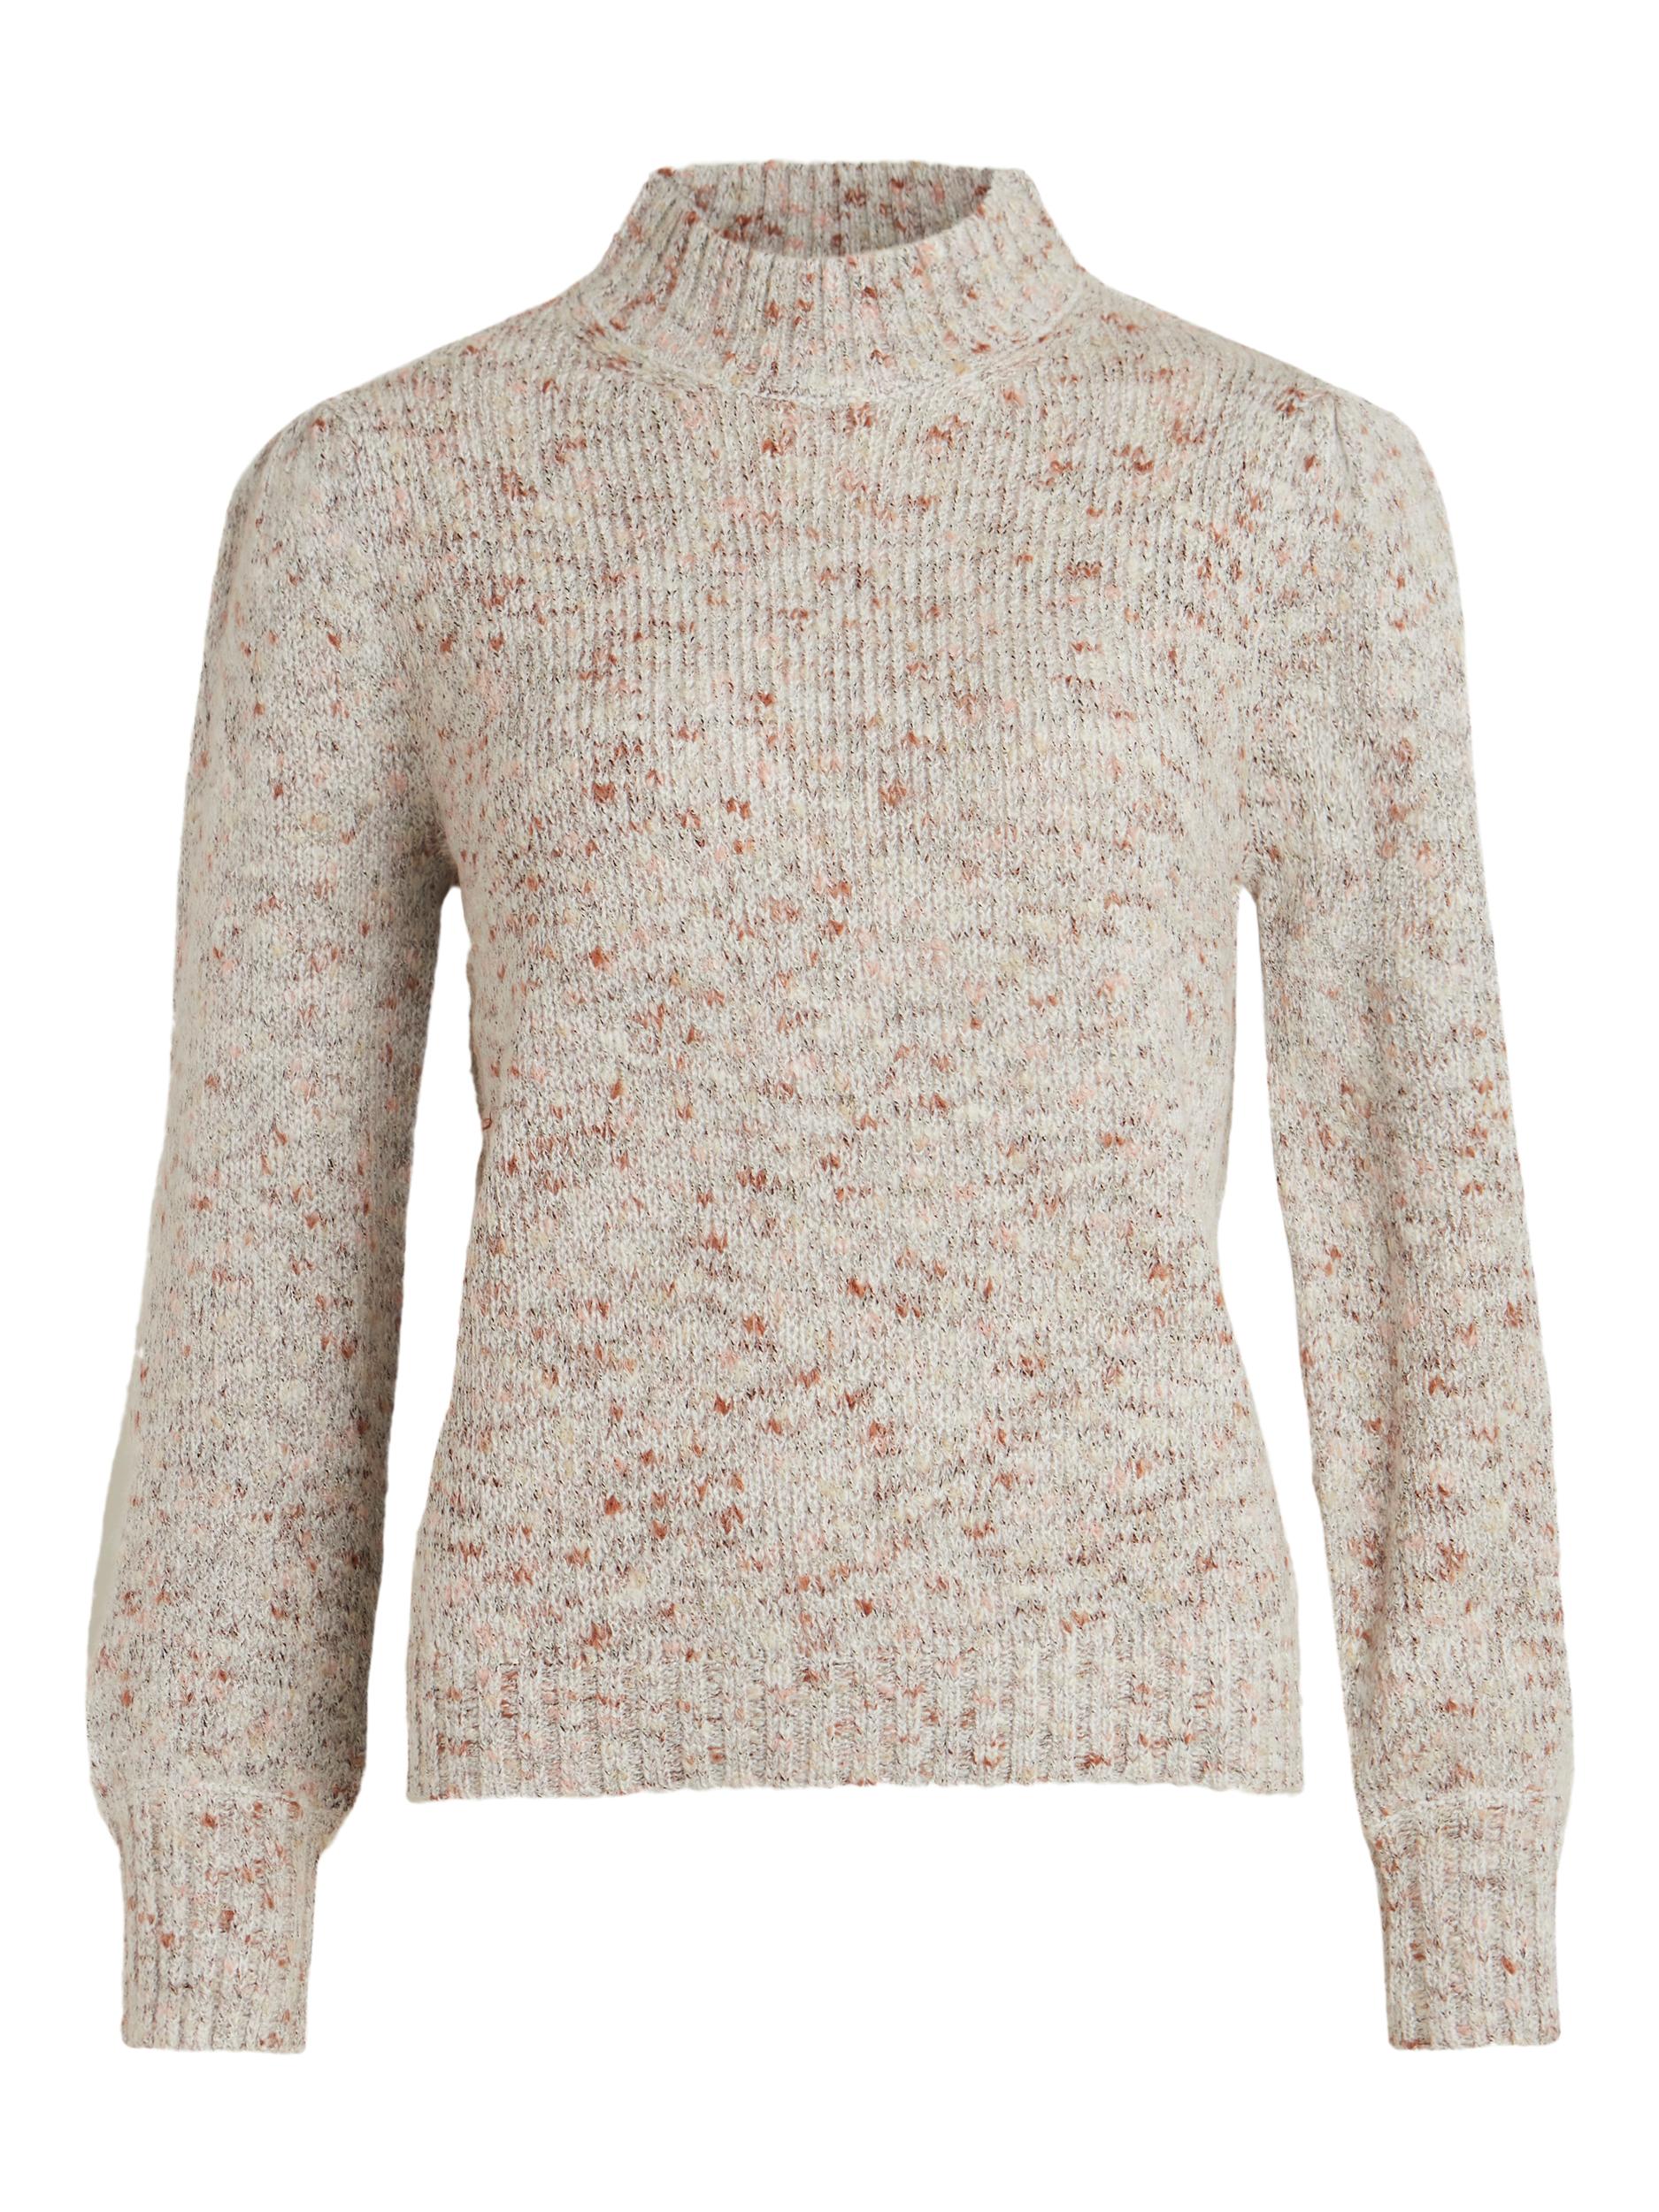 Swetry & dzianina Kobiety VILA Sweter Marl w kolorze Beżowym 